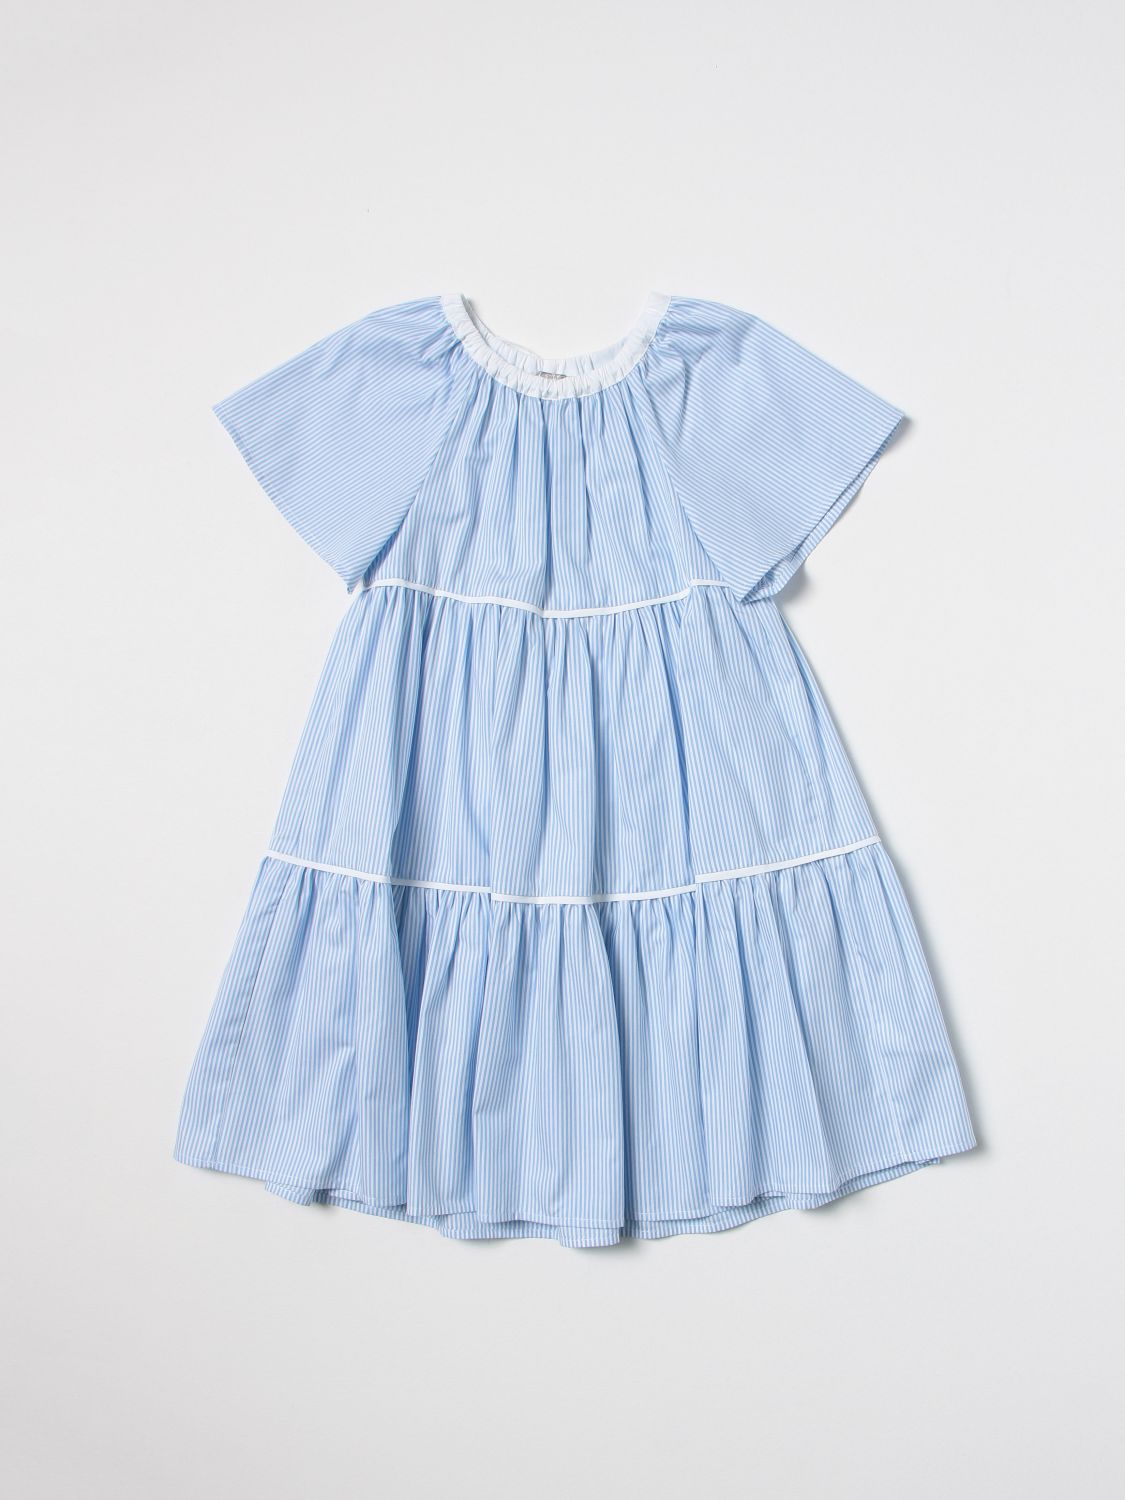 Kleid Il Gufo: Il Gufo Mädchen Kleid hellblau 1